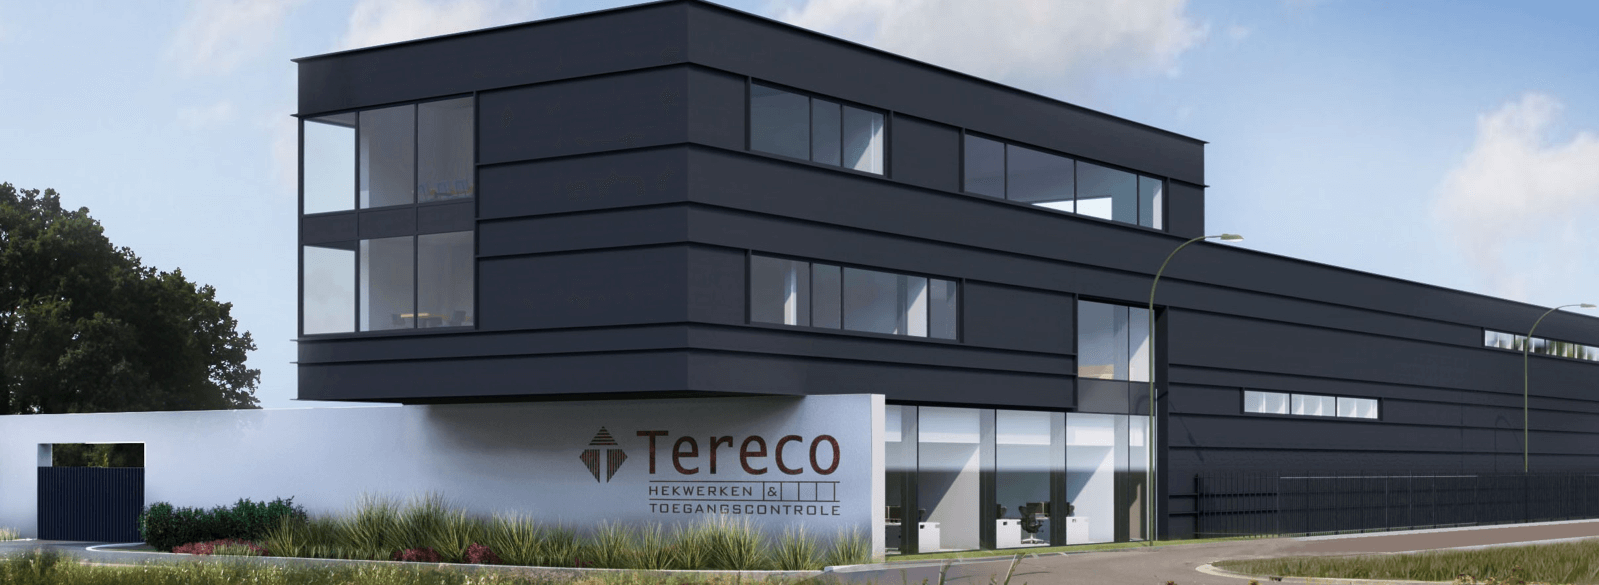 Van Oorschot Aluminium Project Tereco in Breda